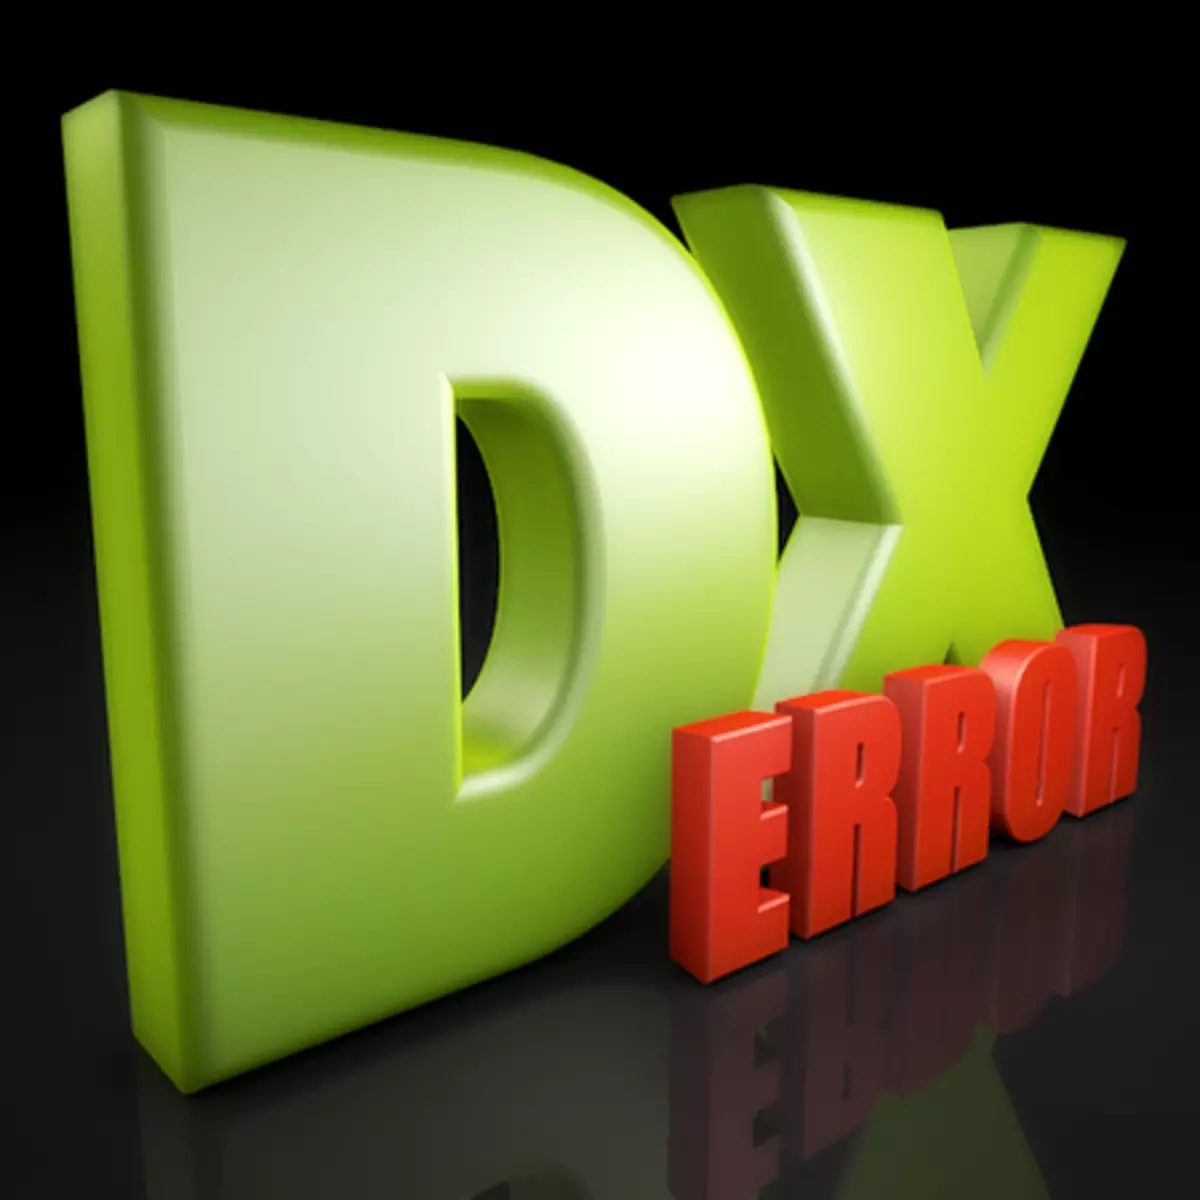 DirectX орнату қатесі Ішкі қате пайда болды